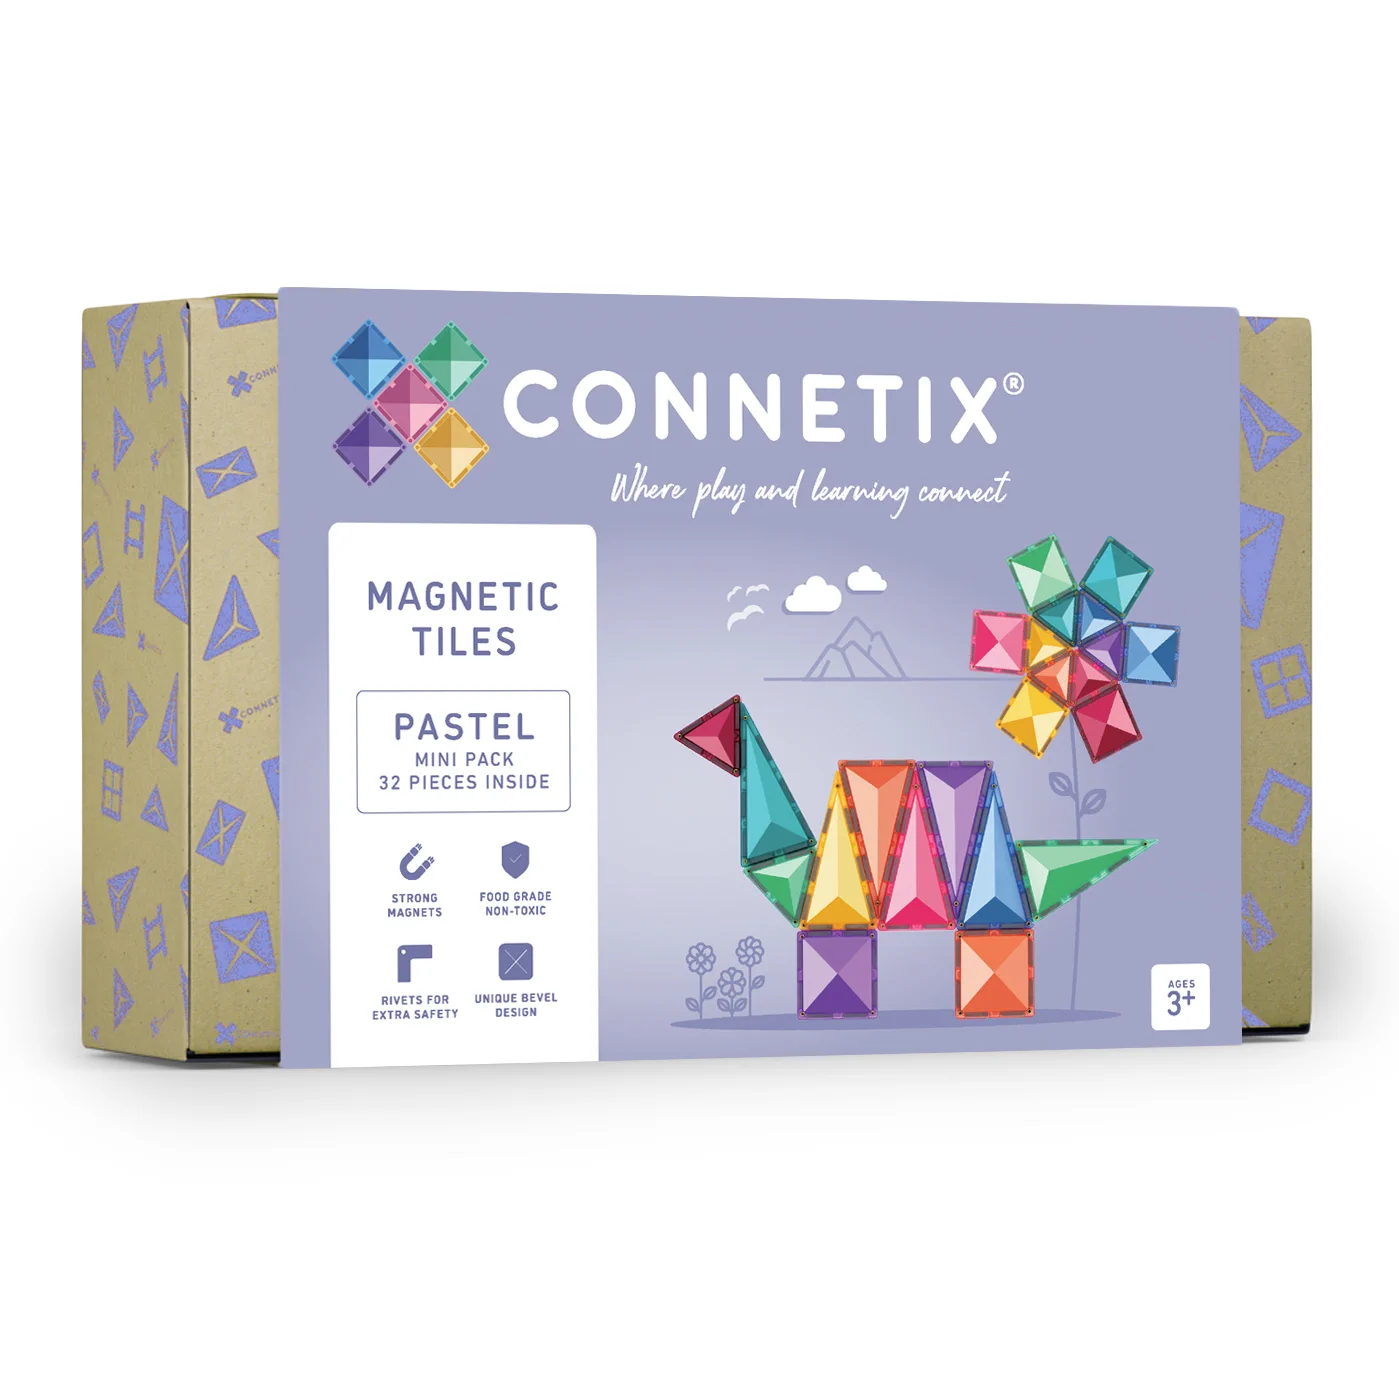 Konstrukcijski komplet za otroke Connetix z 32 pastelnimi magnetnimi ploščicami.